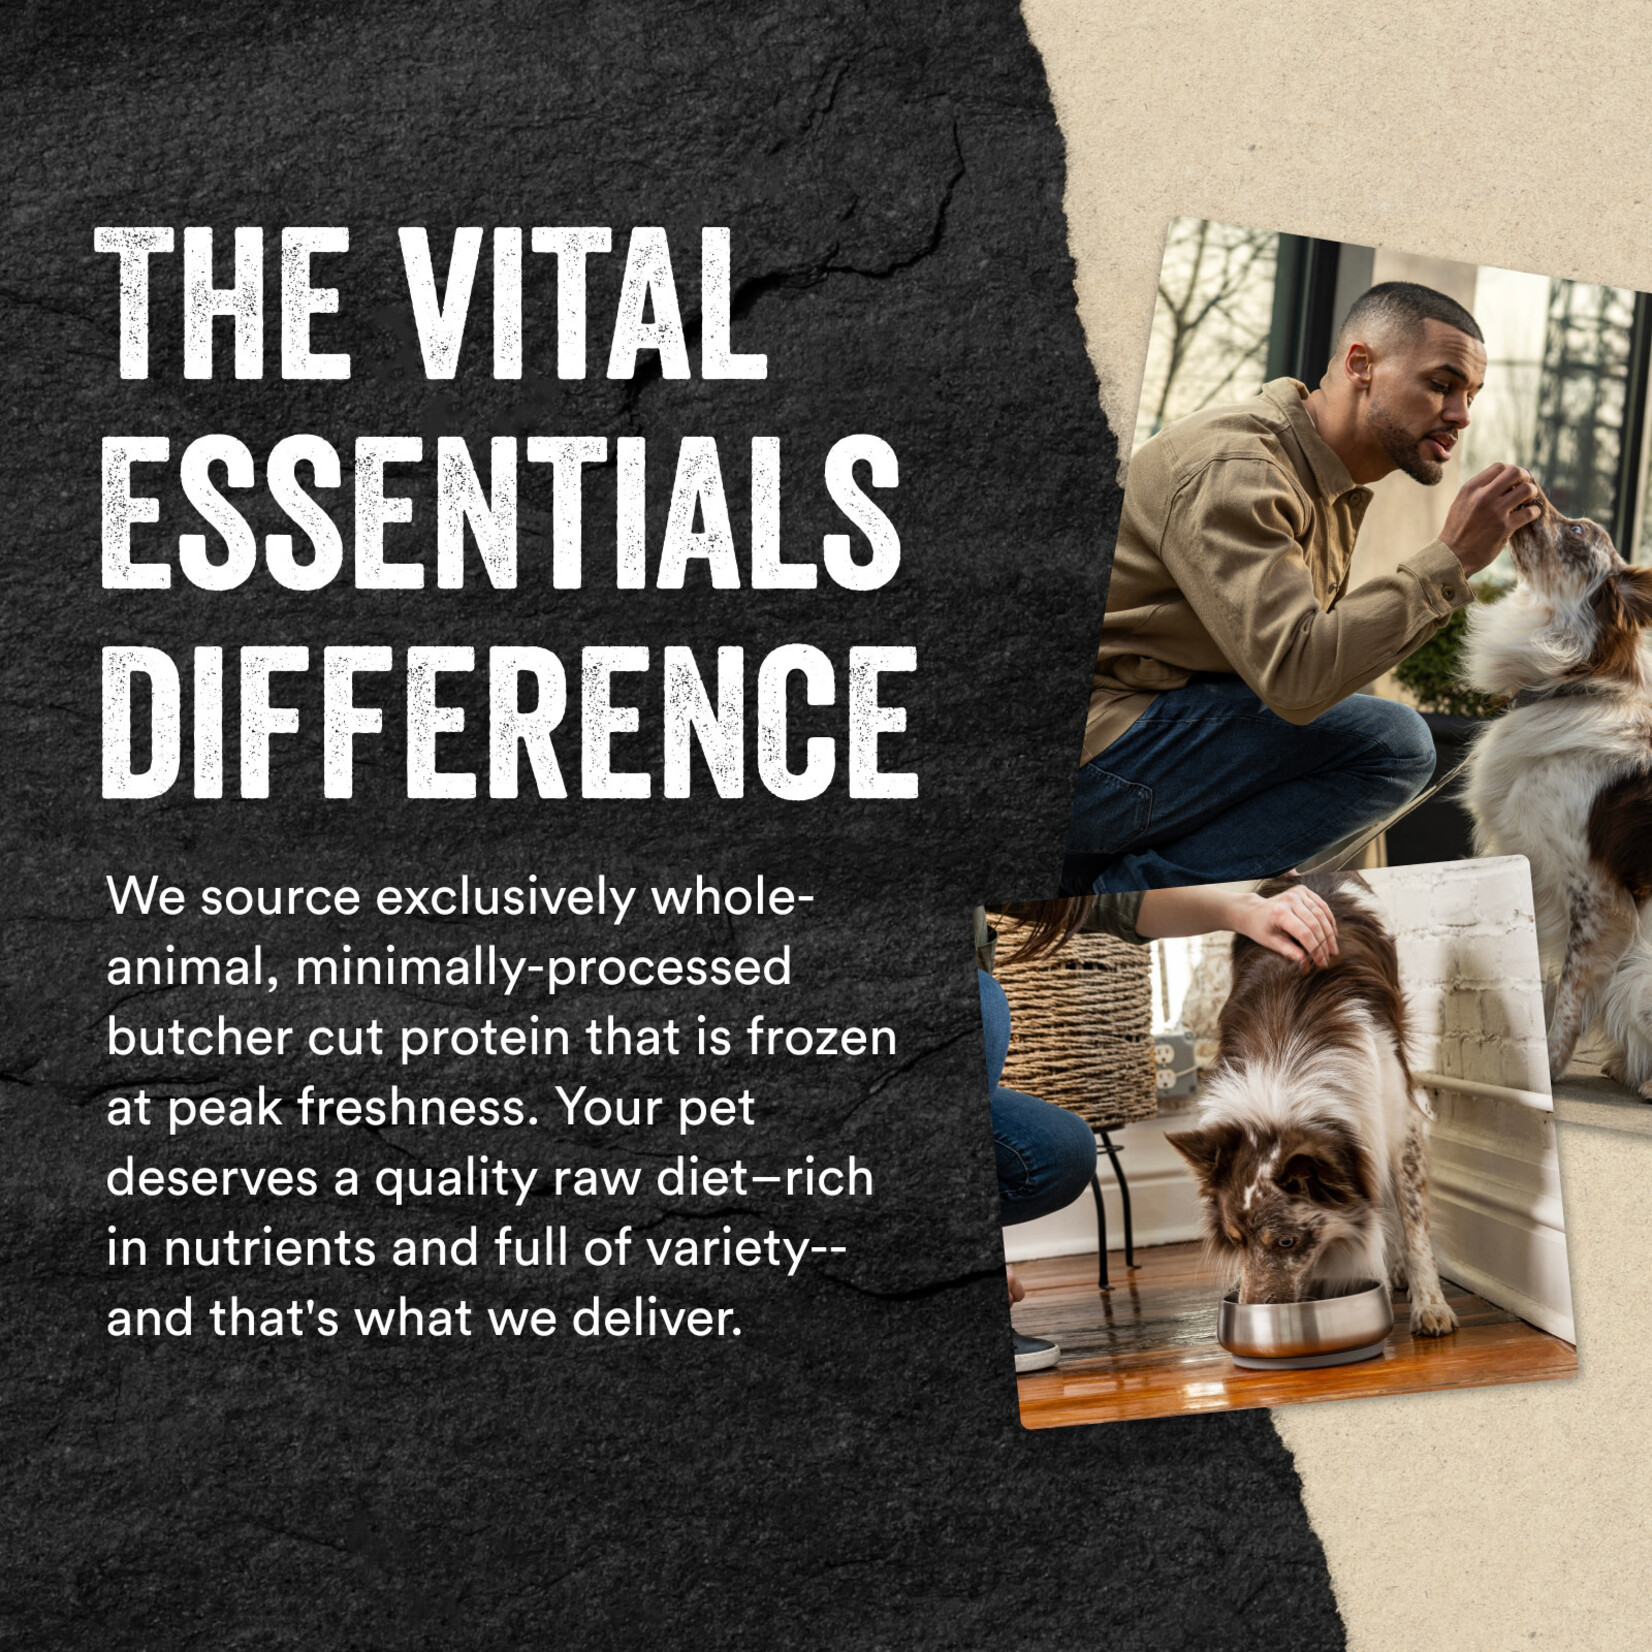 Vital Essentials Freeze-Dried Duck Bites Dog Treats